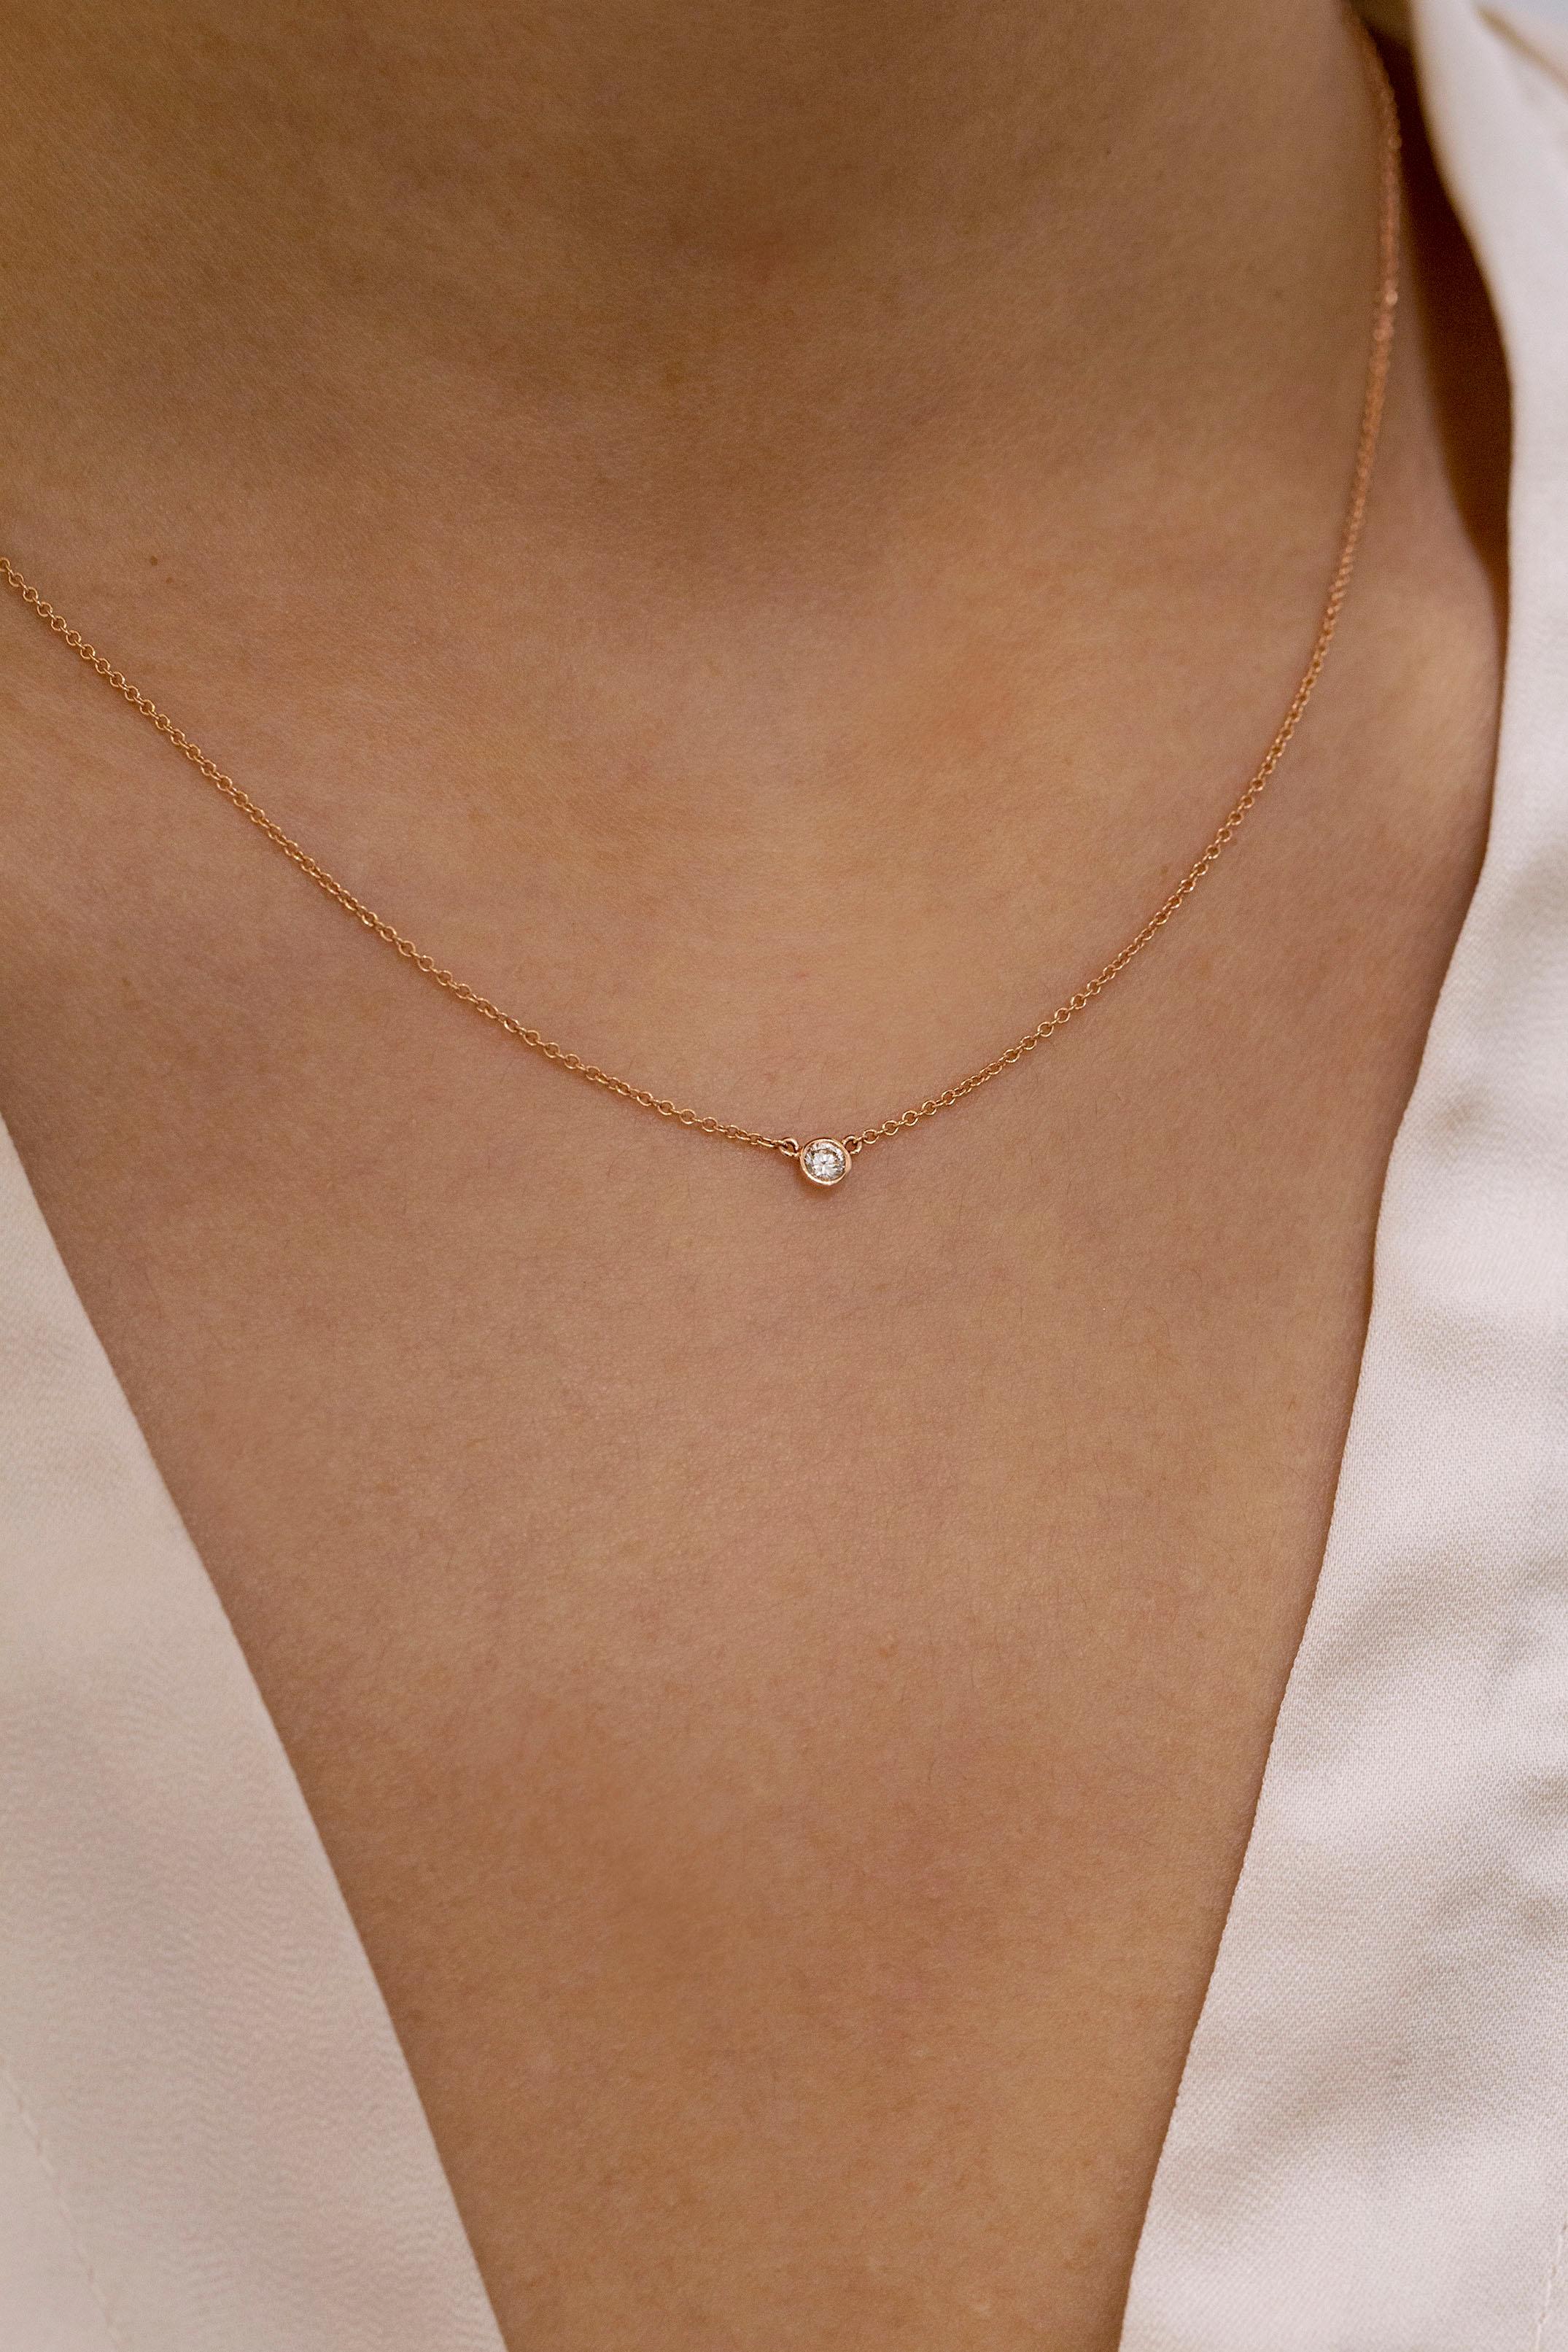 single bezel diamond necklace